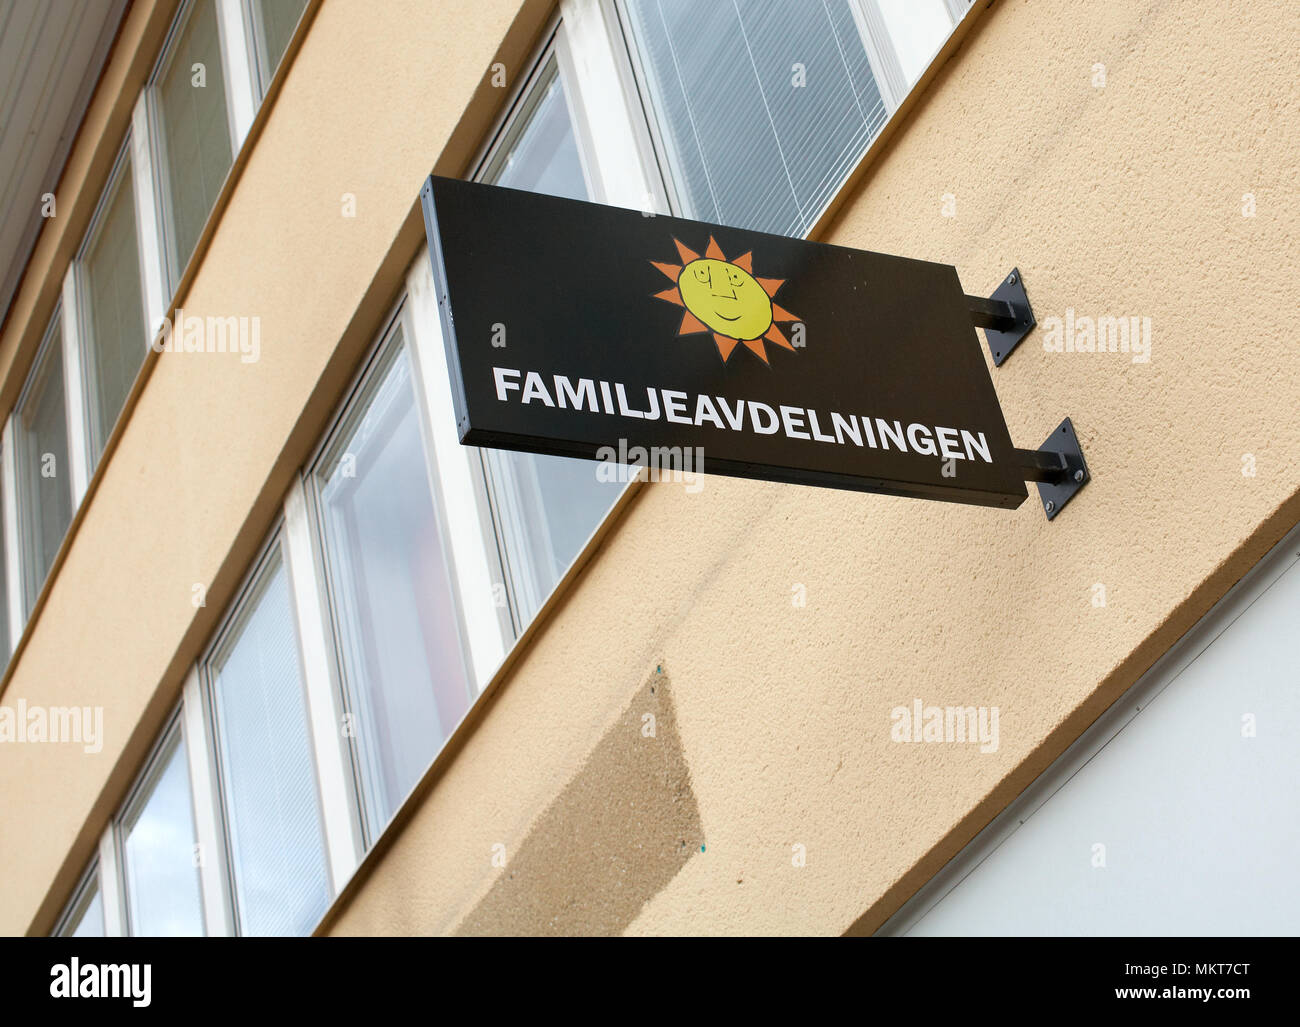 7 Settembre 2012: Karlstad, Svezia: comune di Karlstad, Famiglia divisione, di digital signage e costruzione di ufficio. Foto Stock